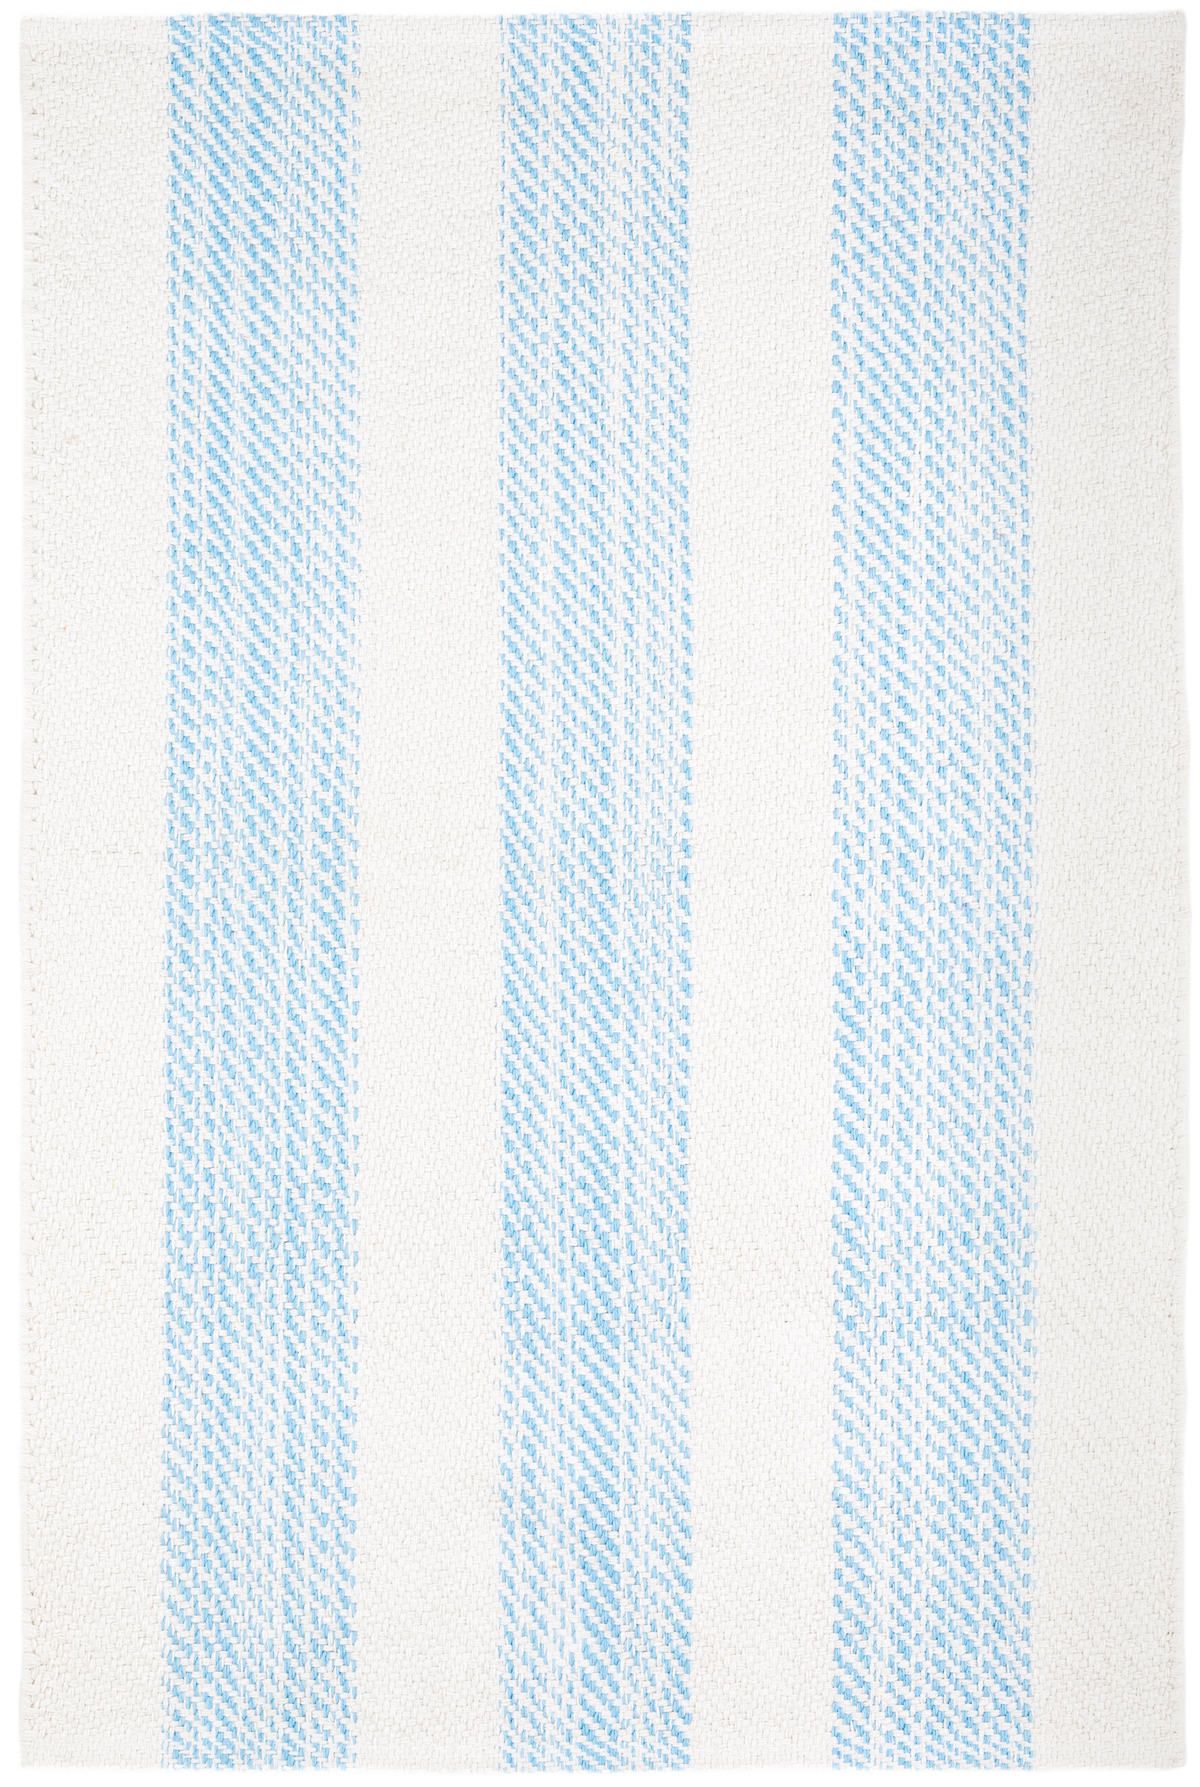 Cruise Stripe Blue Woven Cotton Rug | Annie Selke